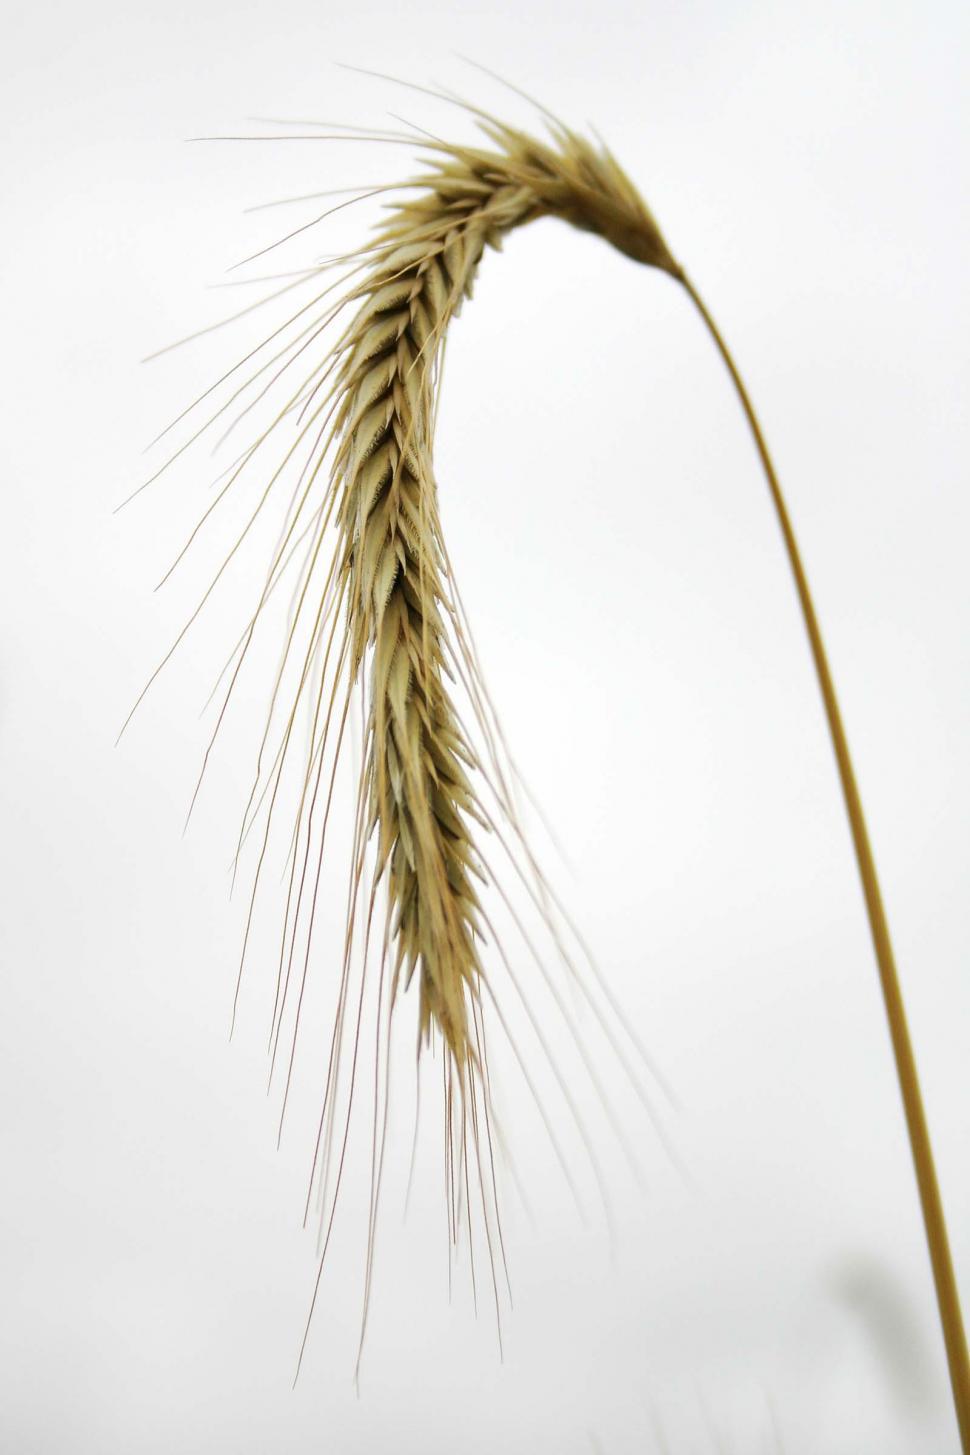 wheat stalk